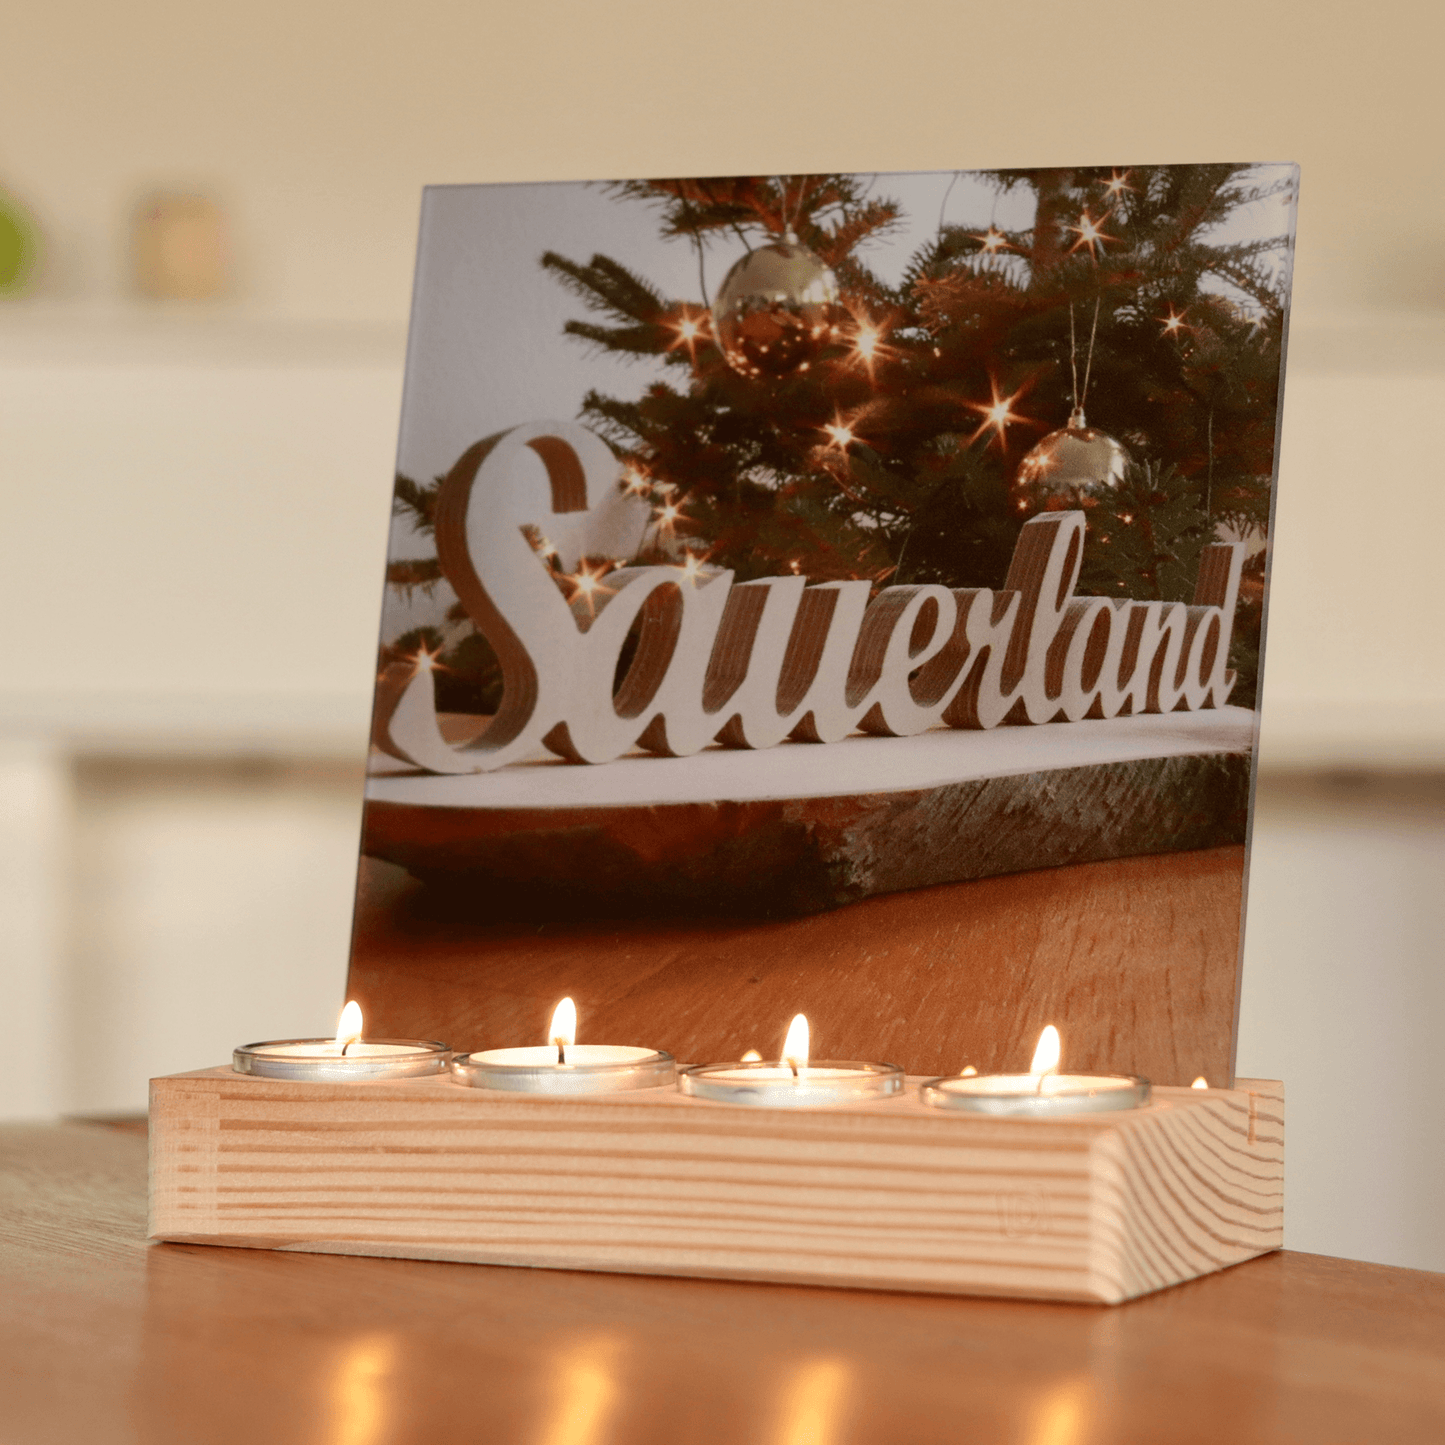 Holz-Bilderhalter aus Fichtenholz. Vorne sind vier Teelichte eingesetzt. Dahinter befindet sich ein Schlitz, in den eine Acrylglasplatte im Format 20 x 20 cm eingesetzt ist. Auf der Acrylplatte ist ein weihnachtliches Sauerland-Motiv zu sehen.